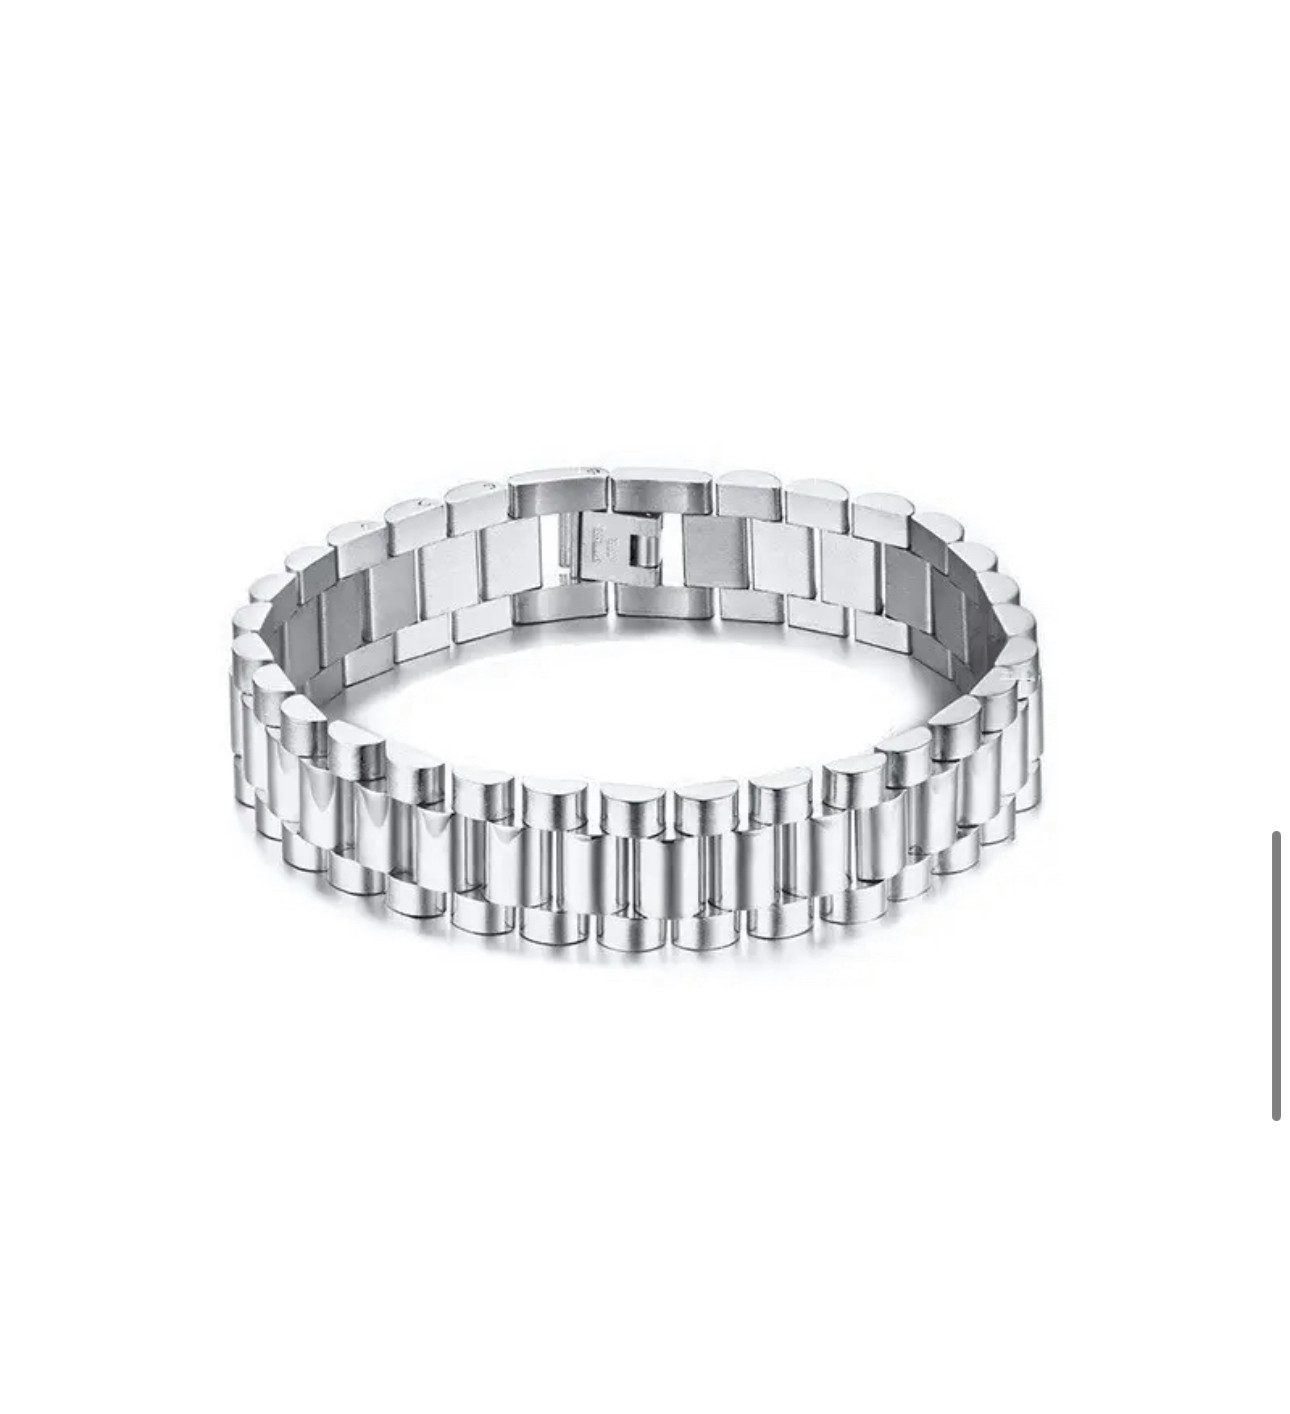 ROUGEMONT Edelstahlarmband Massives Unisex Trend Edelstahl Armband Gold Silber Armband 22cm, Wasserfest